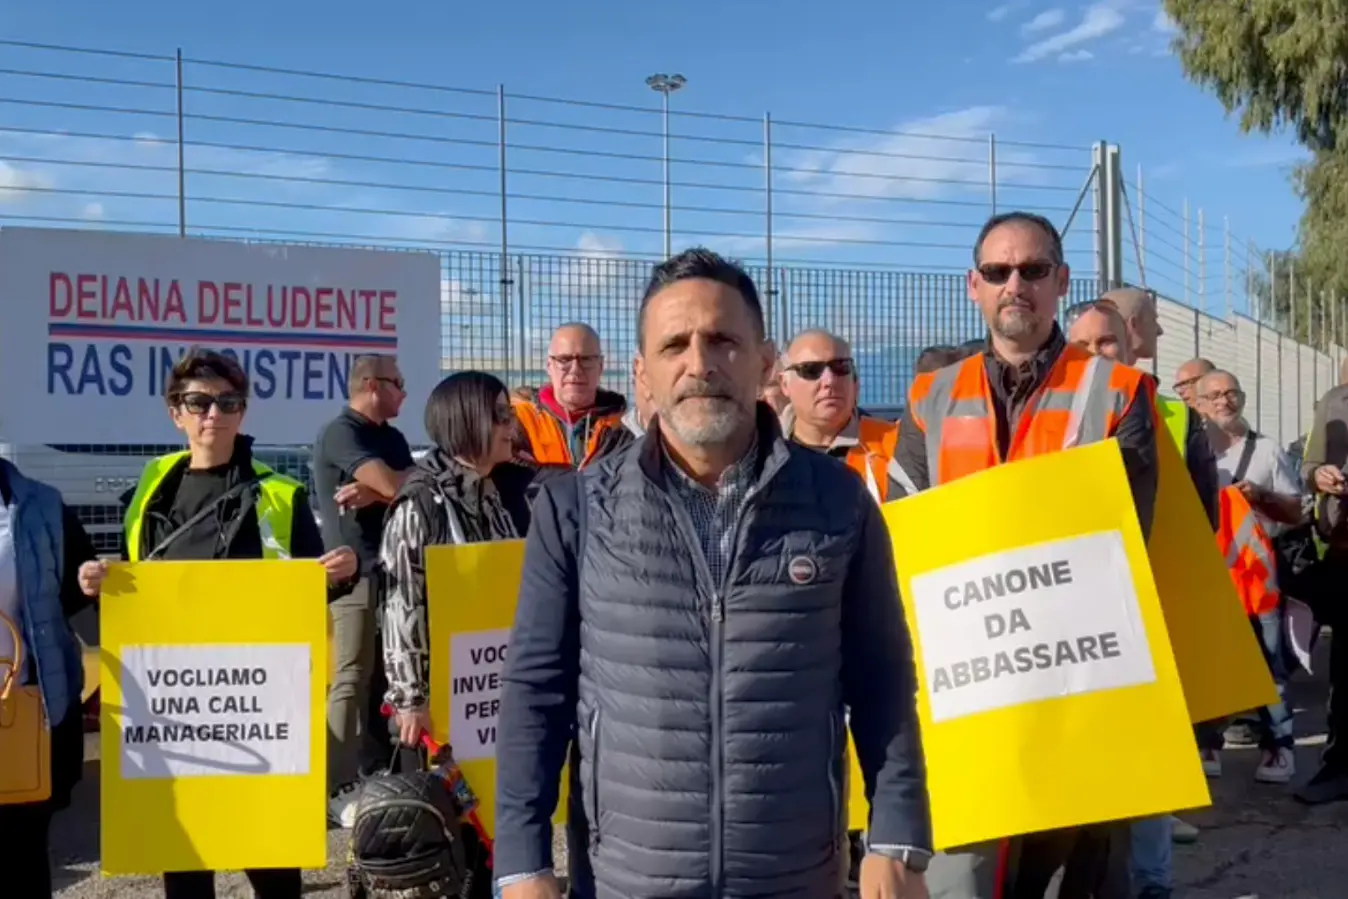 La protesta degli ex lavoratori di Porto Canale a Cagliari (foto Melis)